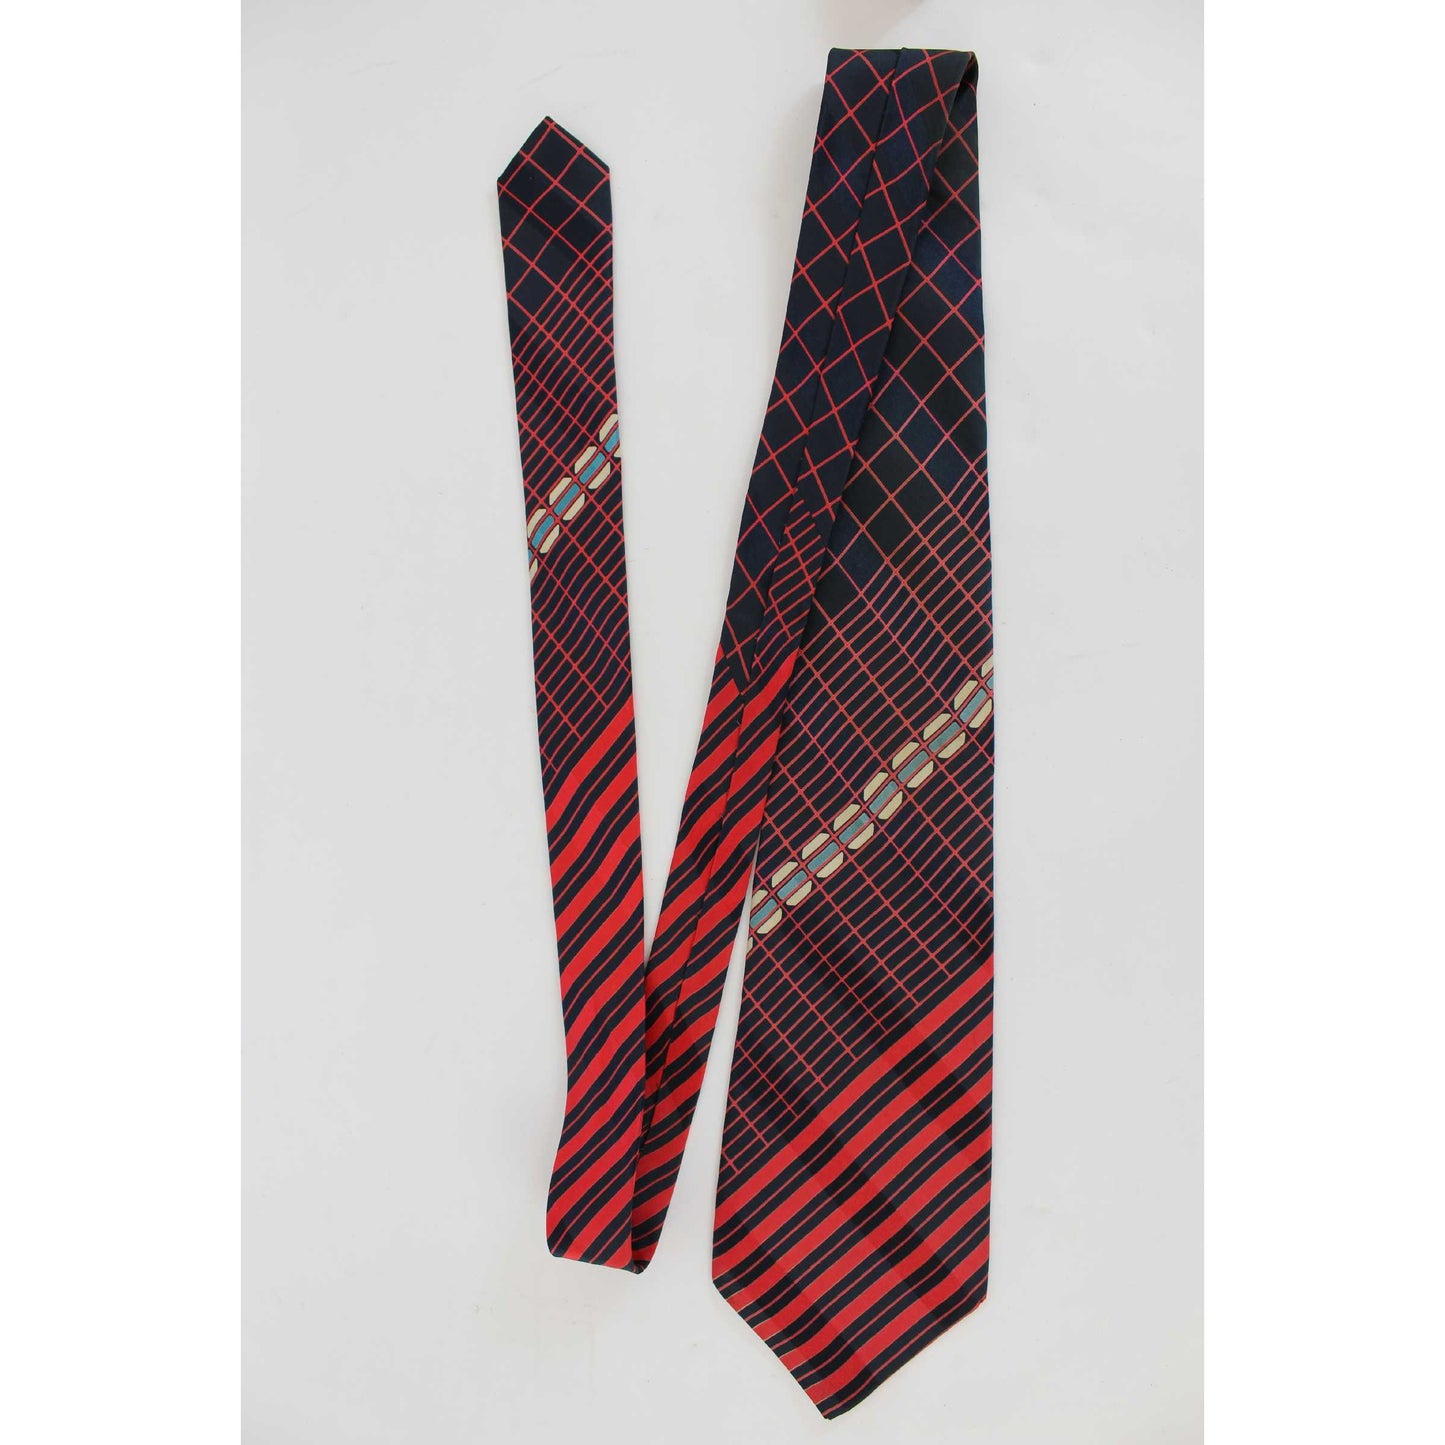 Lanvin Vintage Silk Blue Red Regimental Tie